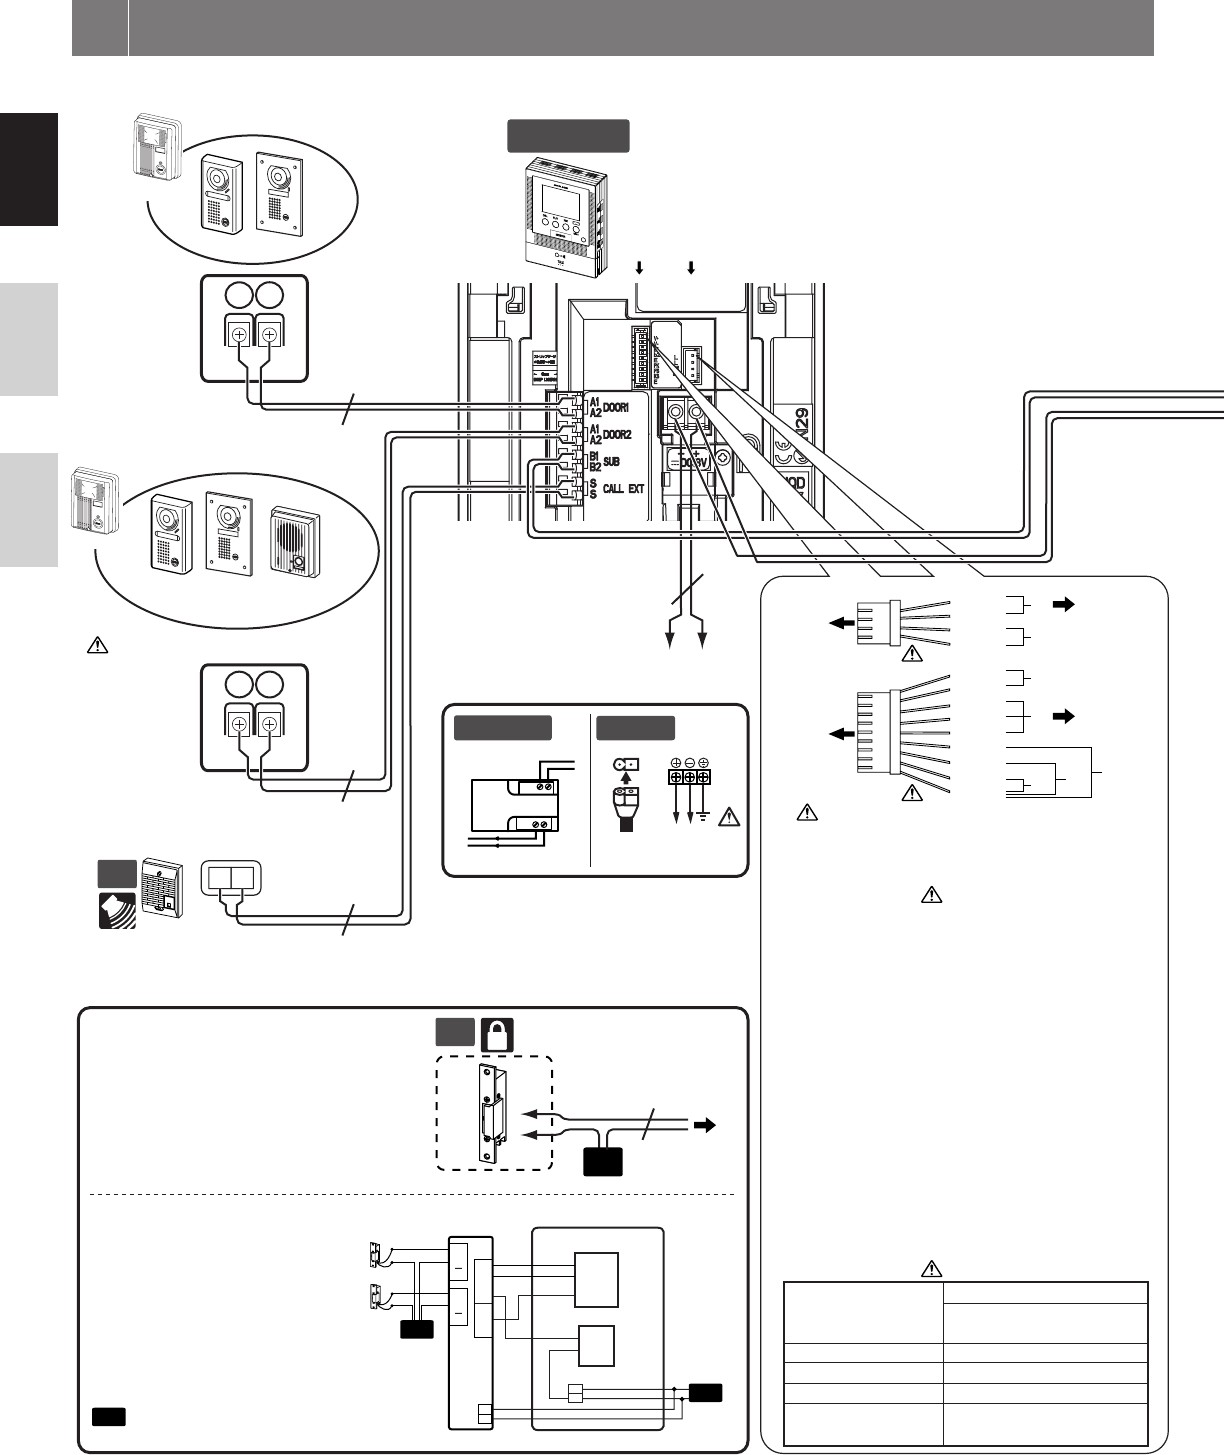 AiPhone Video Inter Wiring Diagram AiPhone Wiring Diagram Hd Dump